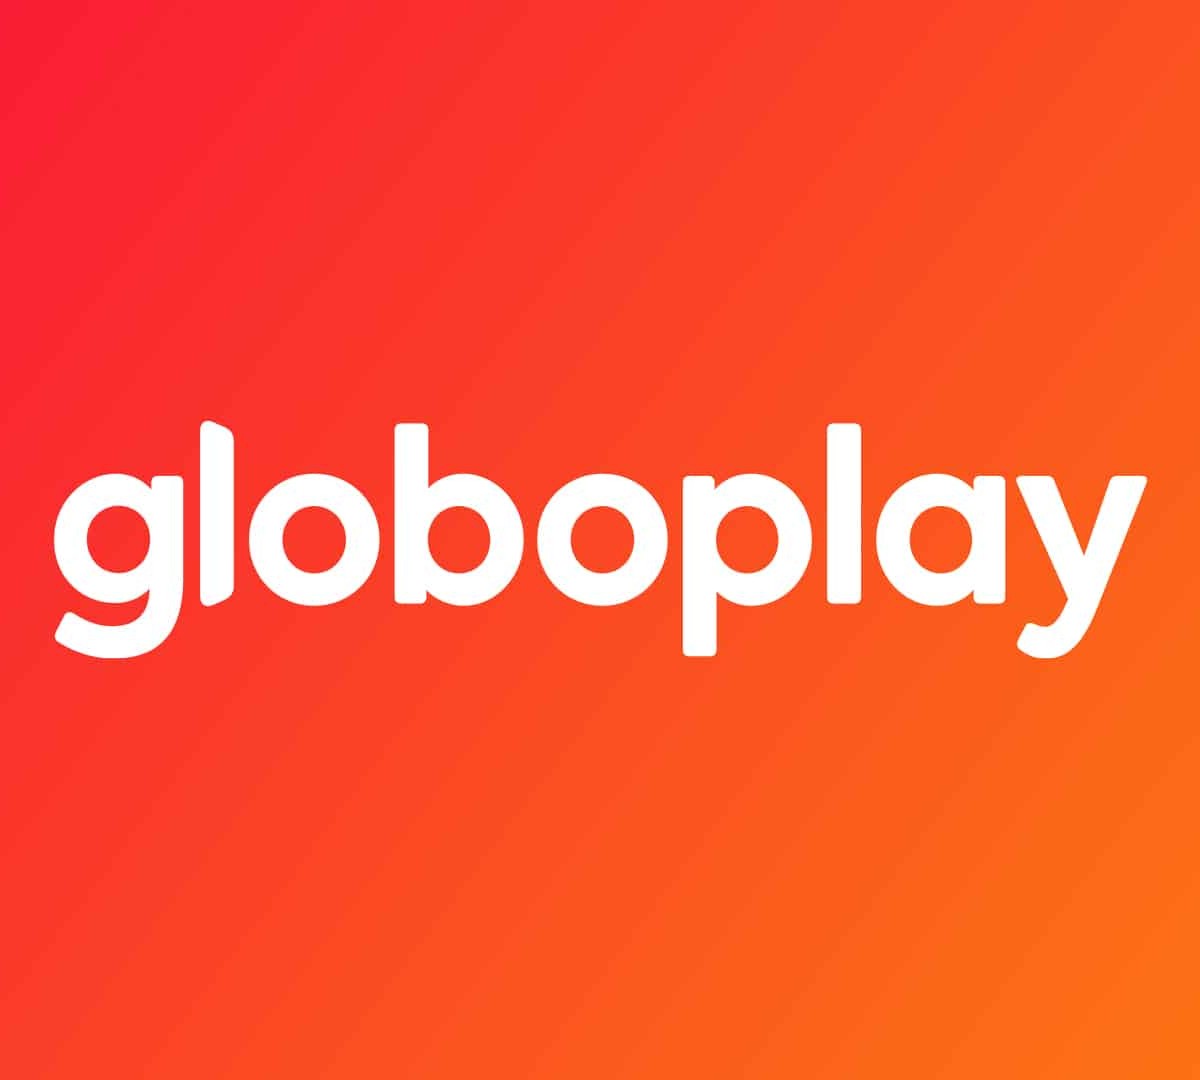 Globoplay - Resgate